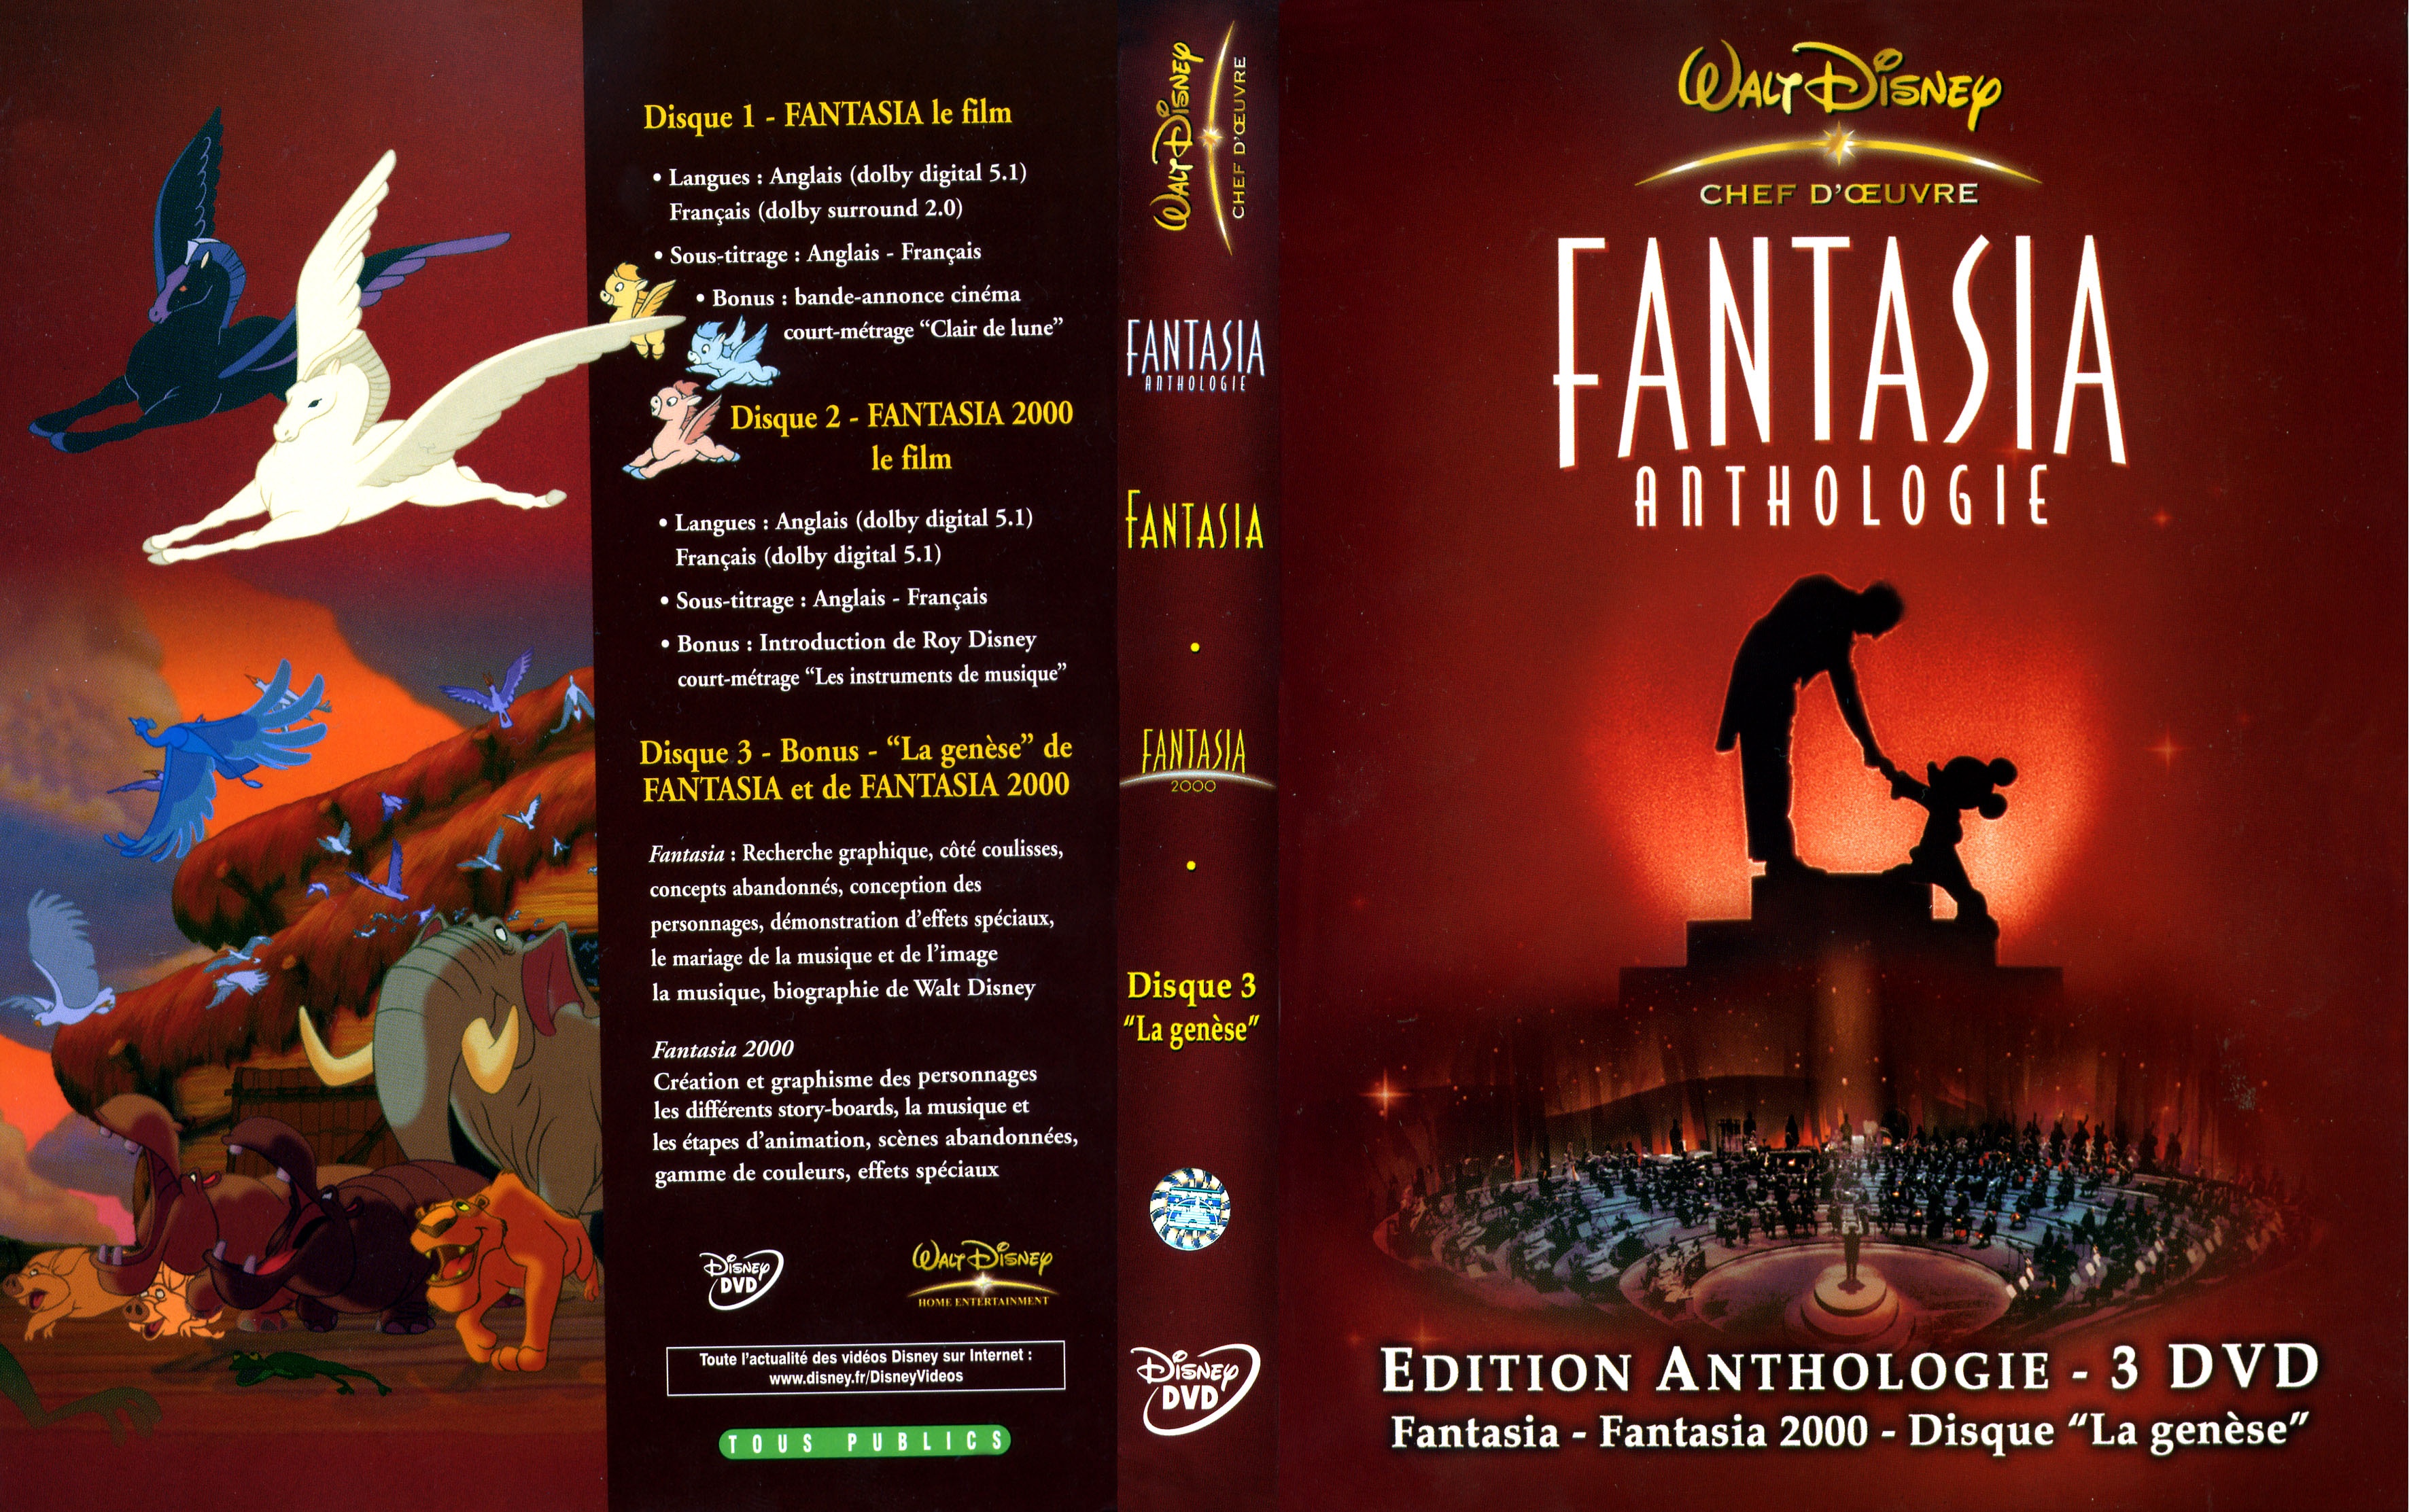 Jaquette DVD Fantasia anthologie